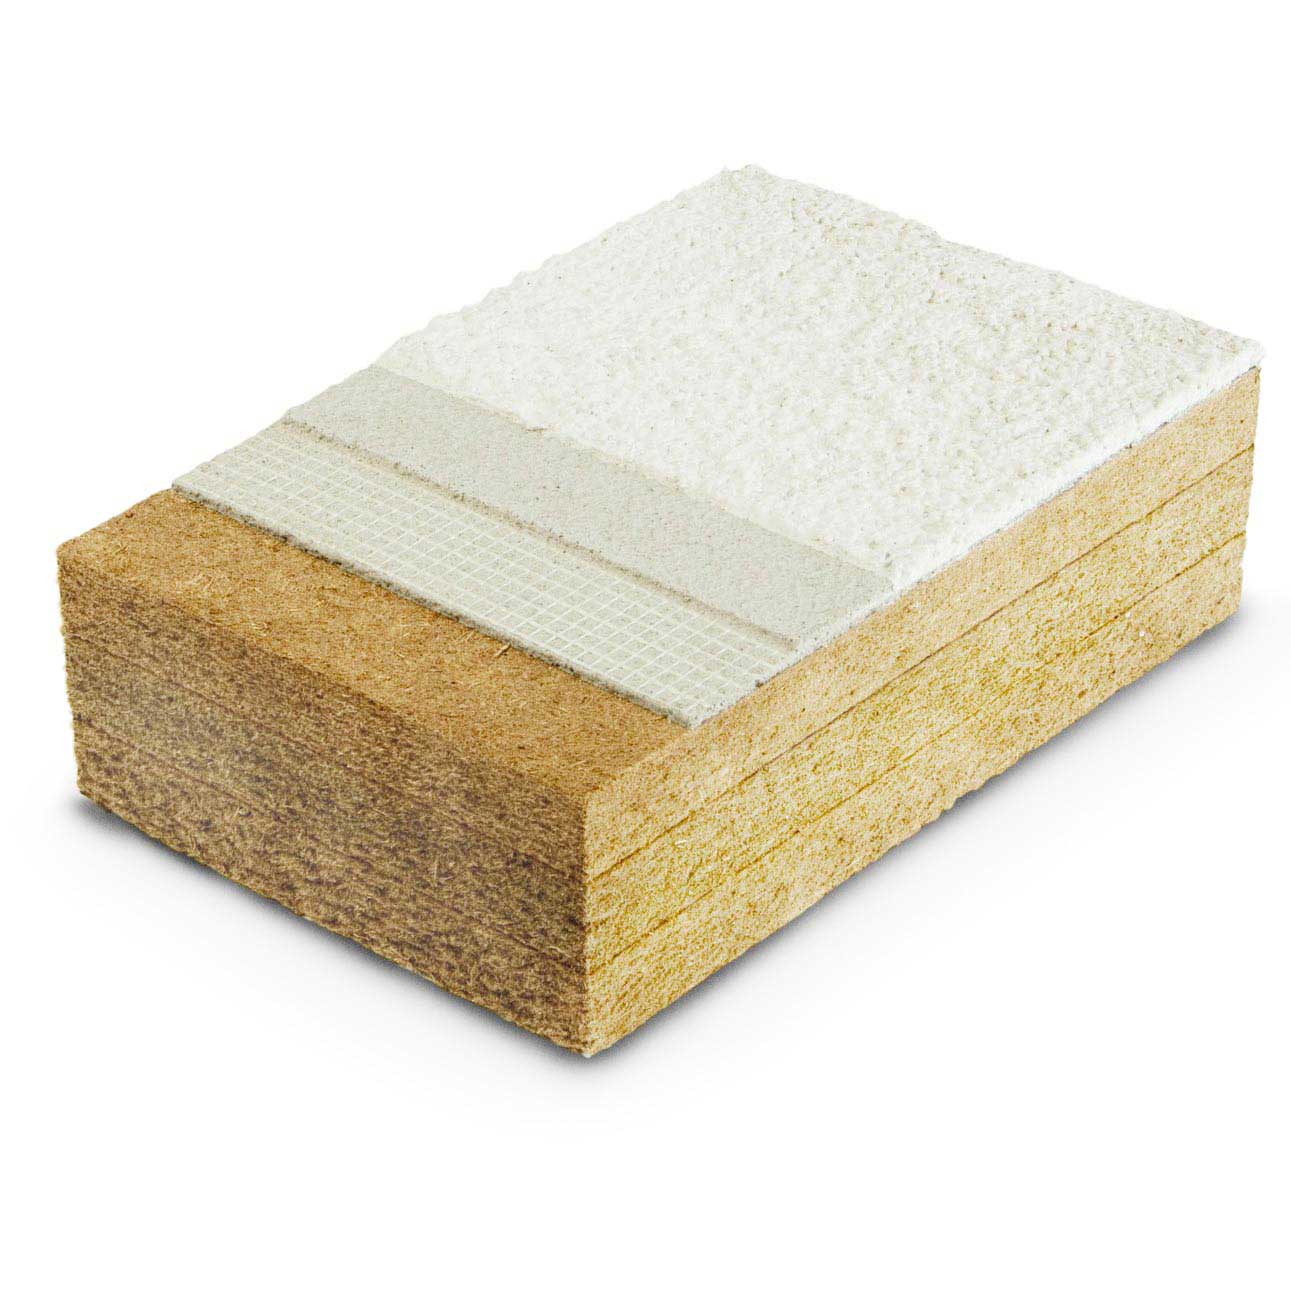 Pannelli isolanti in fibra di legno Protect dry densità 110, 140, 180kg/m³